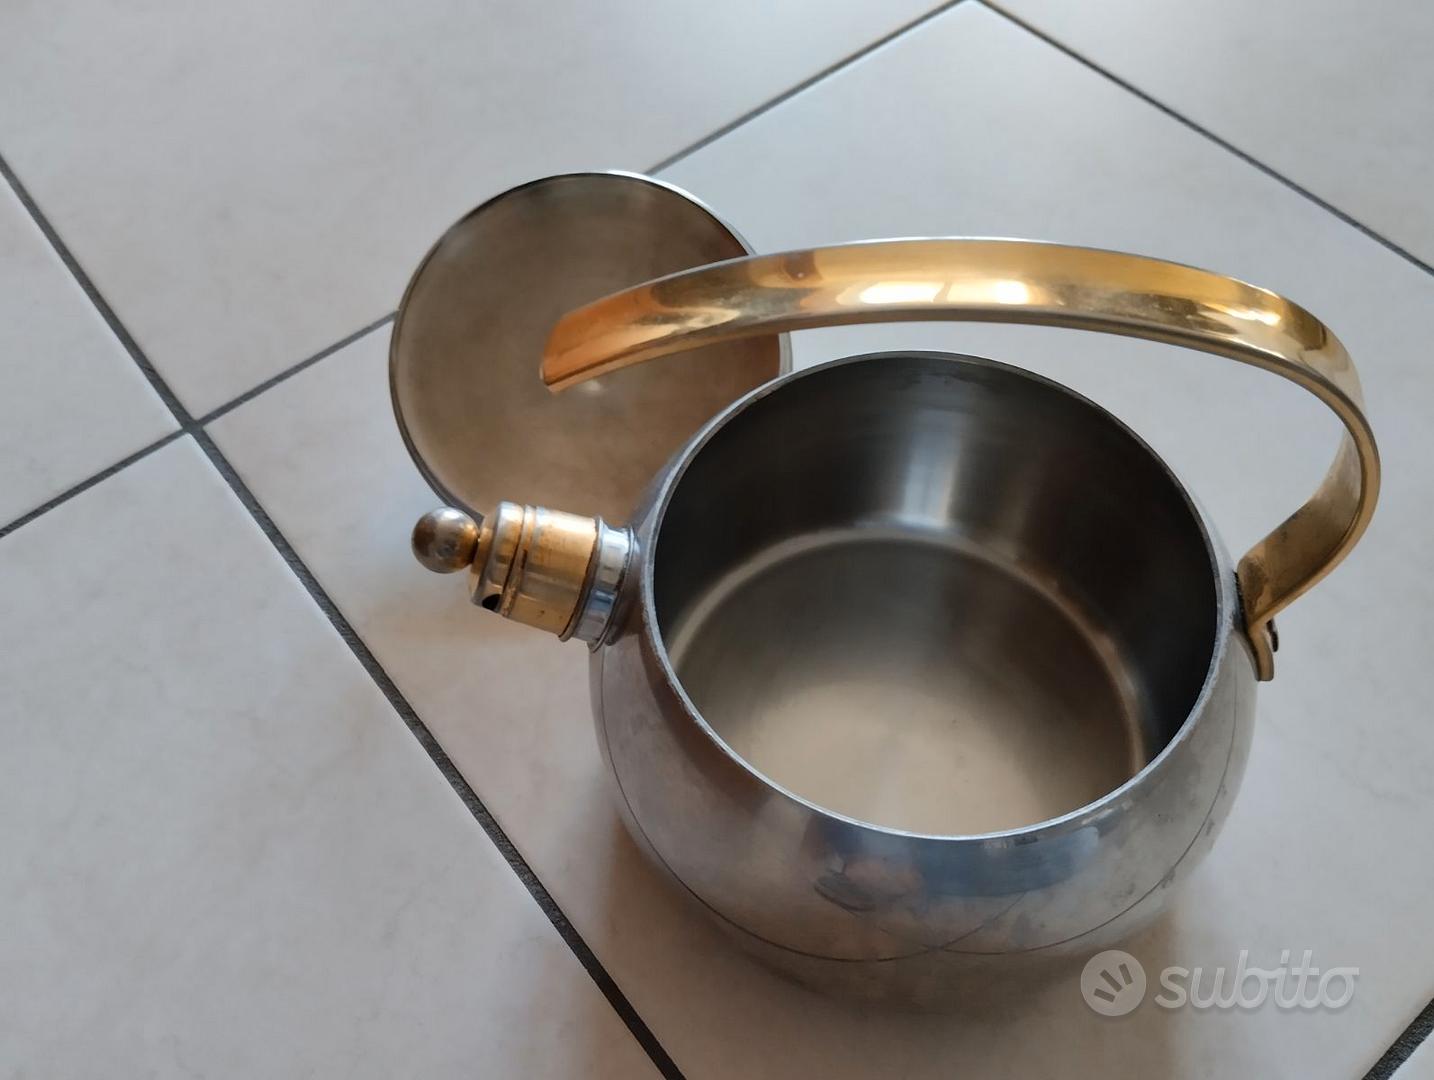 bollitore acciaio inox con rubinetto - Arredamento e Casalinghi In